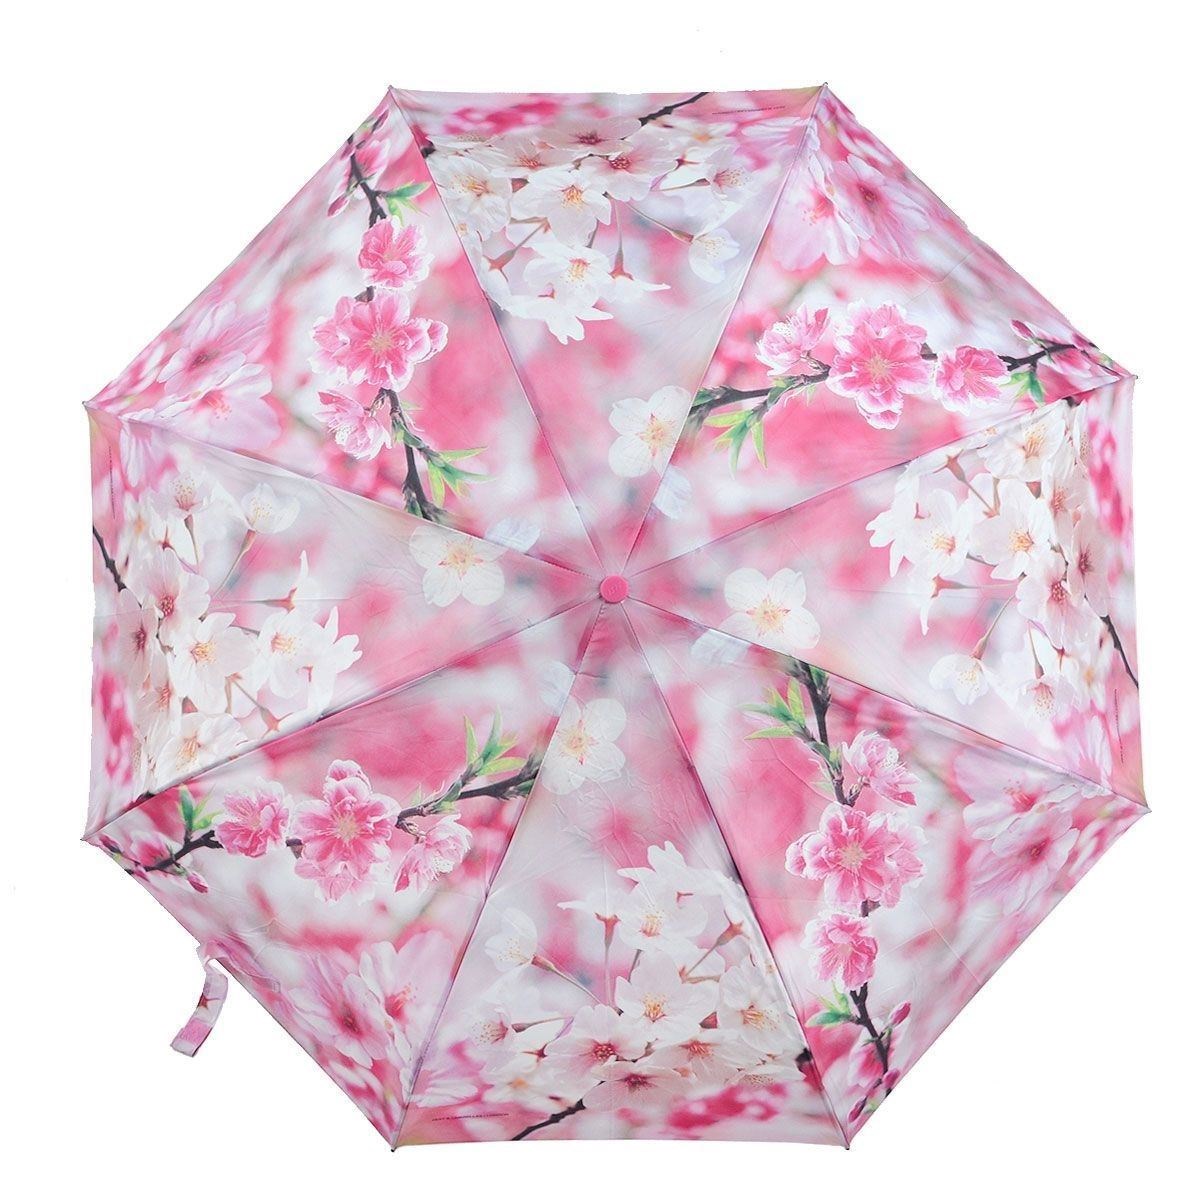 Купить зонт женский на озон. Зонт женский ЗЕСТ. Зонт ЗЕСТ Сакура розовая. Зонт Сакура автомат. Зонты Zest England.